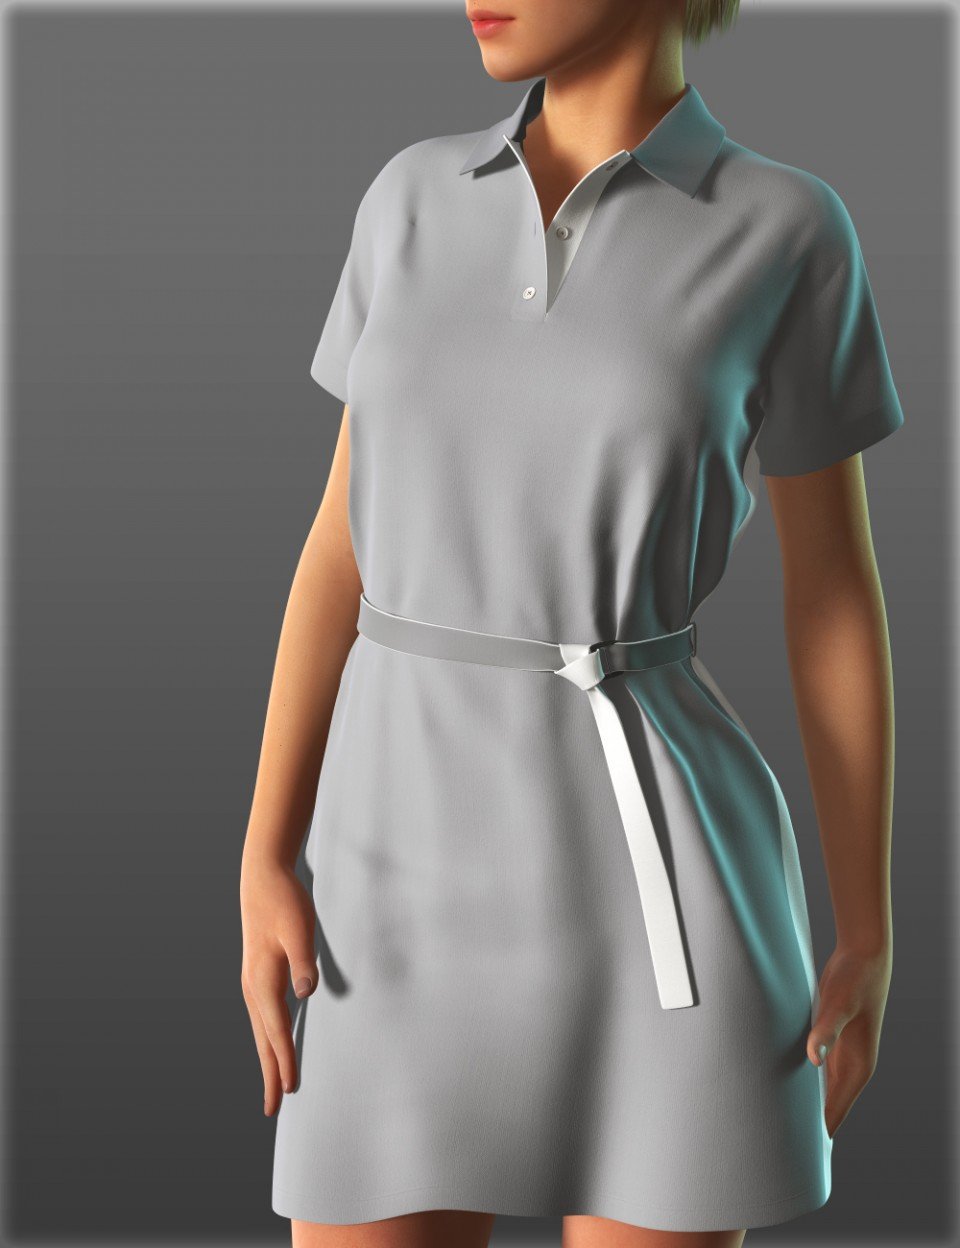 Short Sleeve Shirt Dresses for Genesis 2 Female(s)_DAZ3DDL